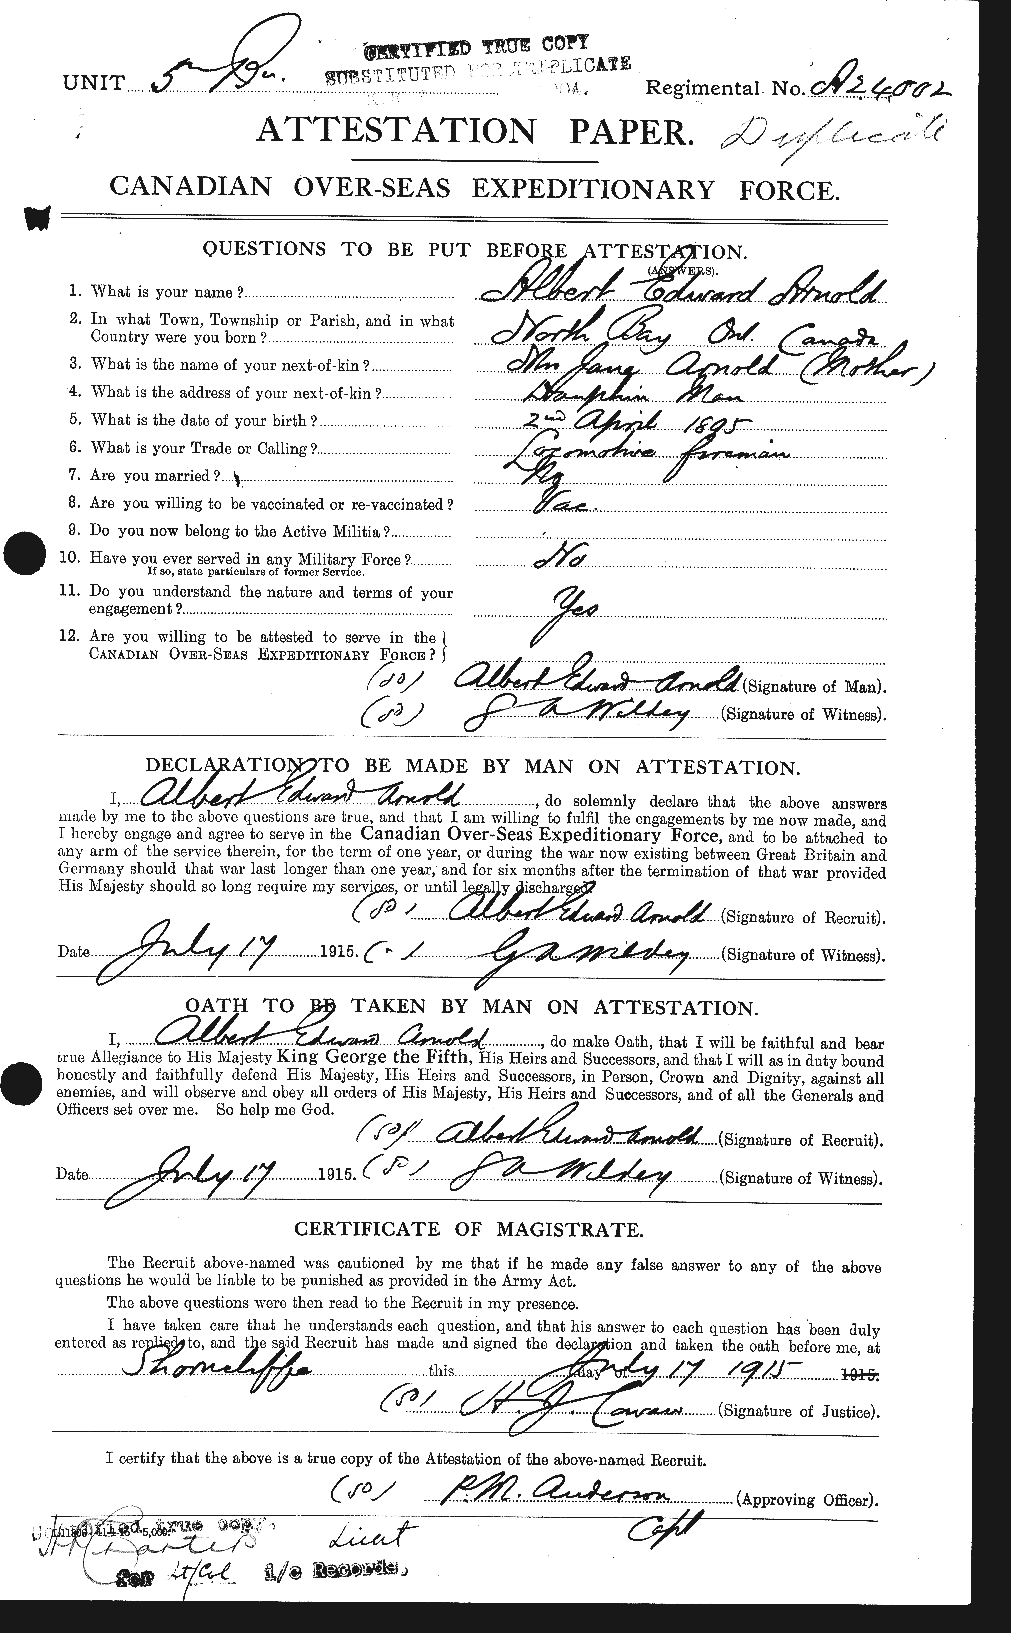 Dossiers du Personnel de la Première Guerre mondiale - CEC 213186a